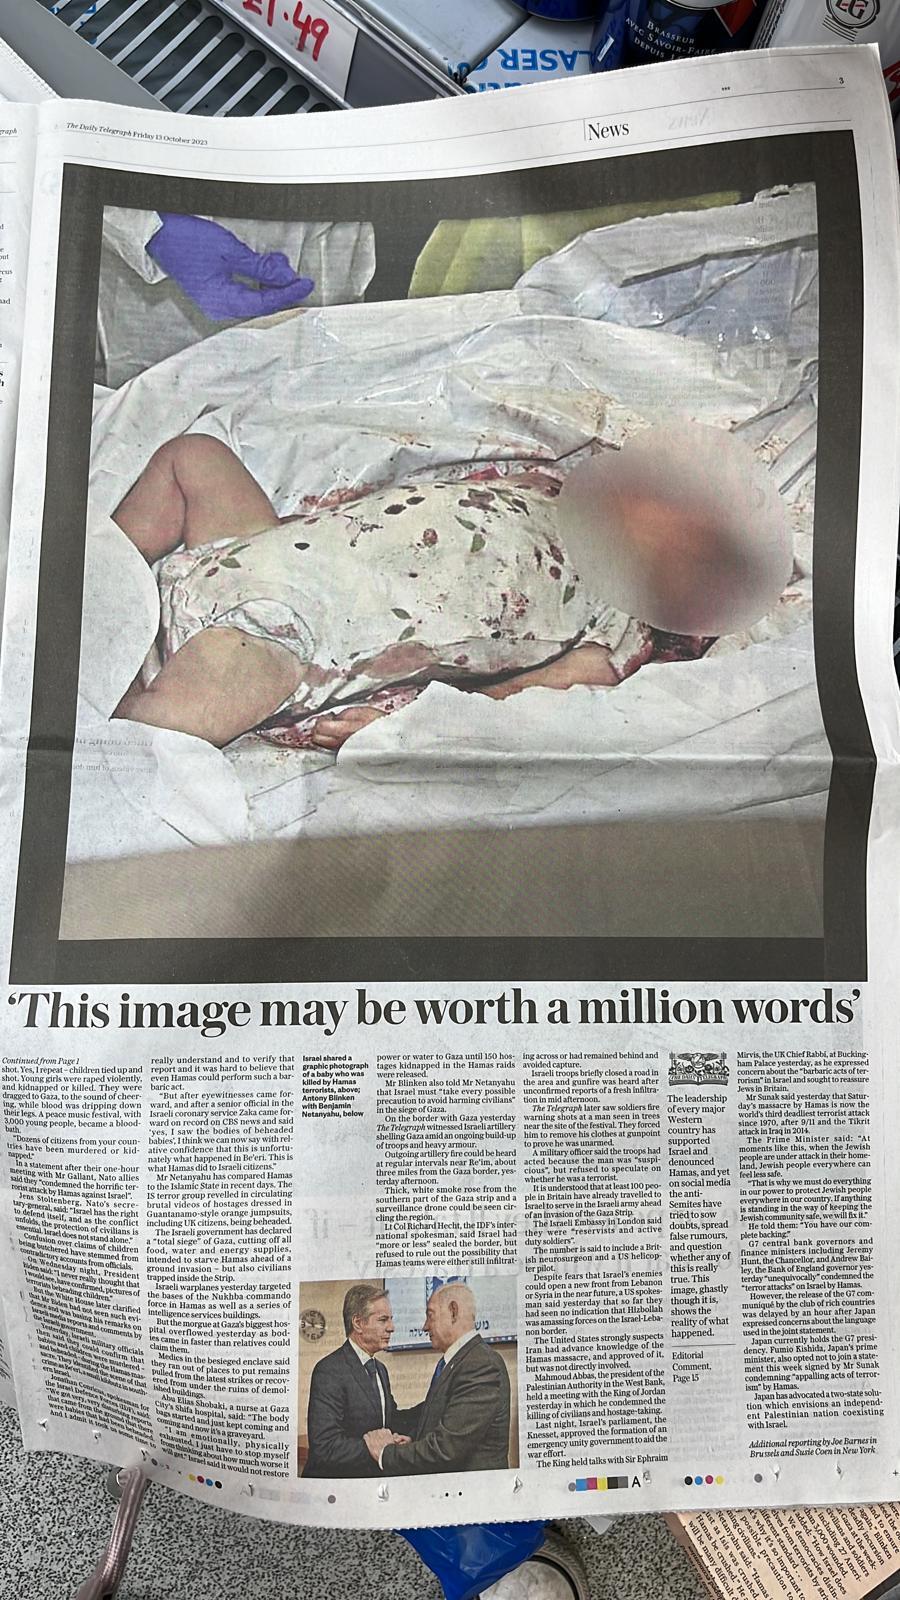 תמונת גופת התינוק שפורסמה בדיילי טלגרף